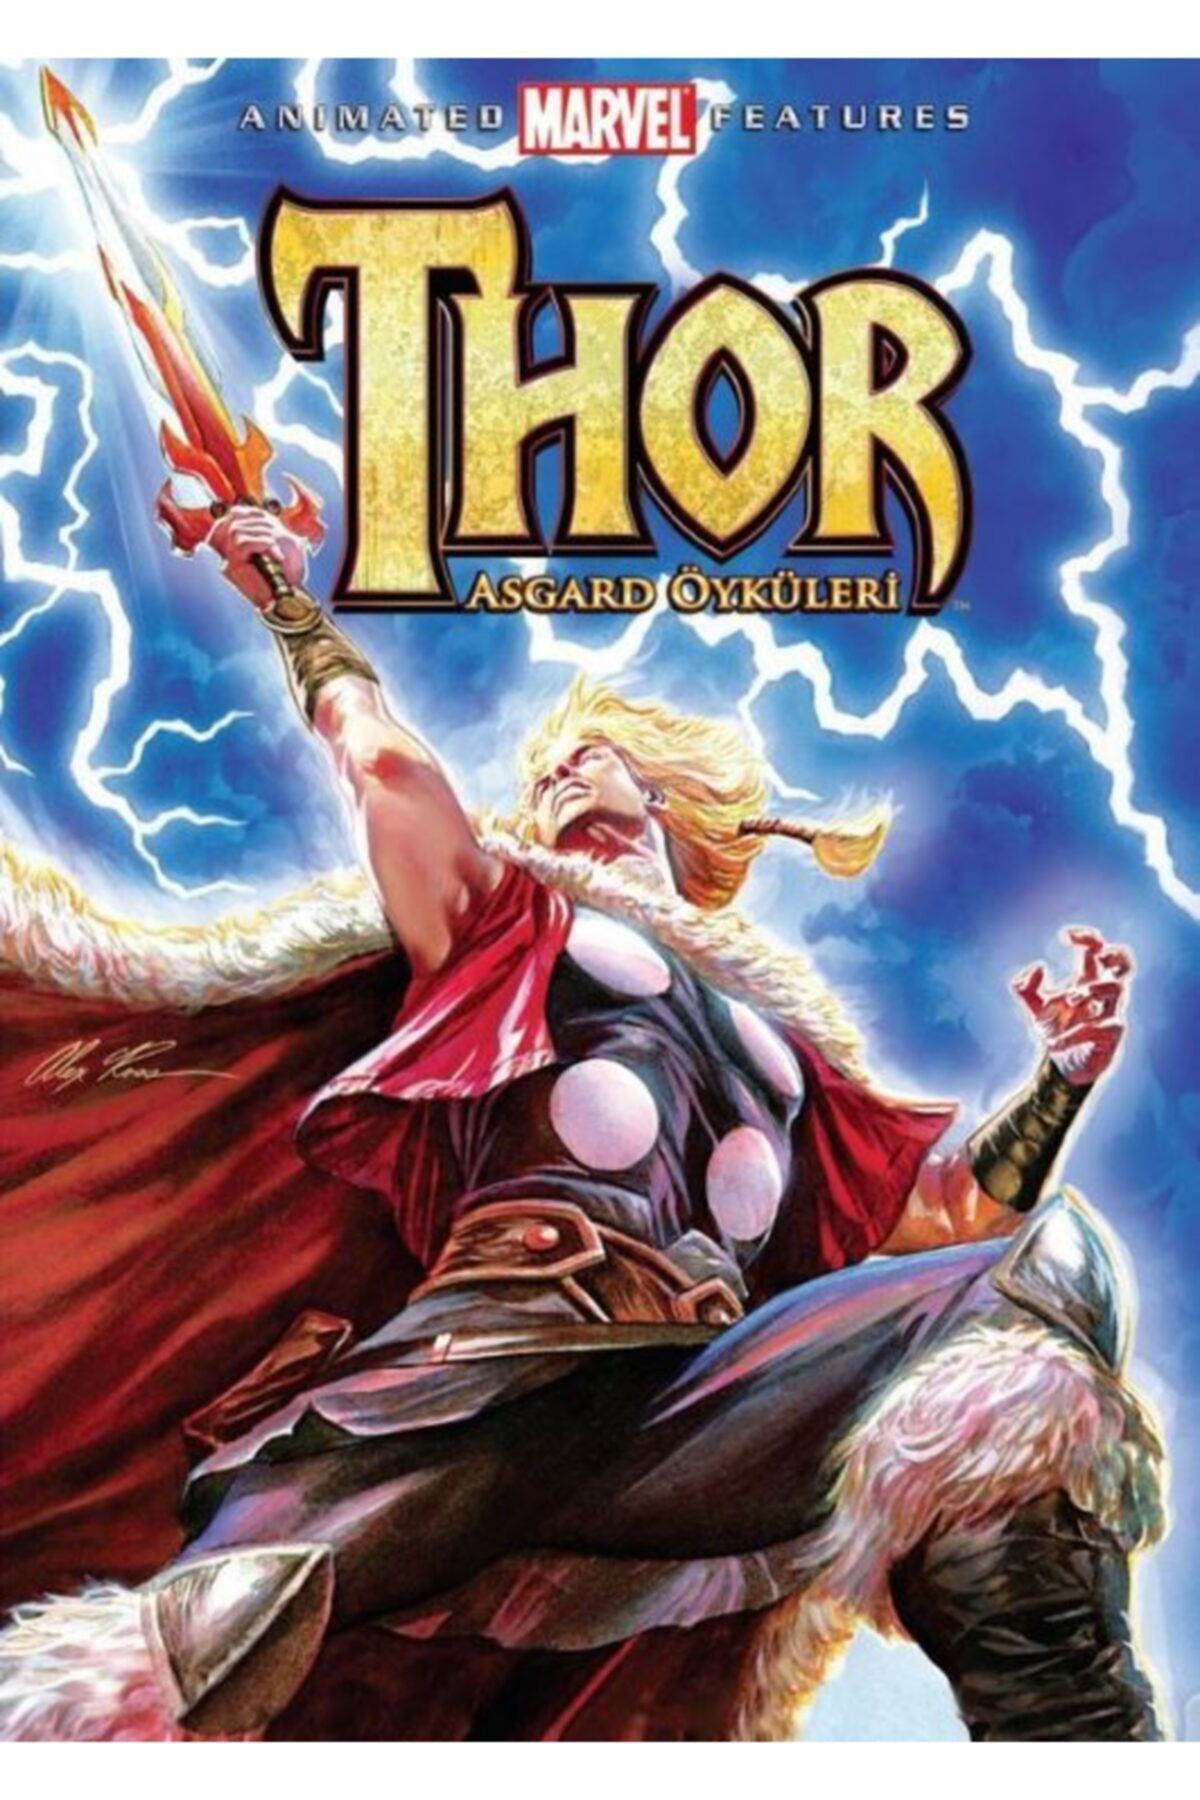 MARVEL Thor Asgard Öyküleri Dvd